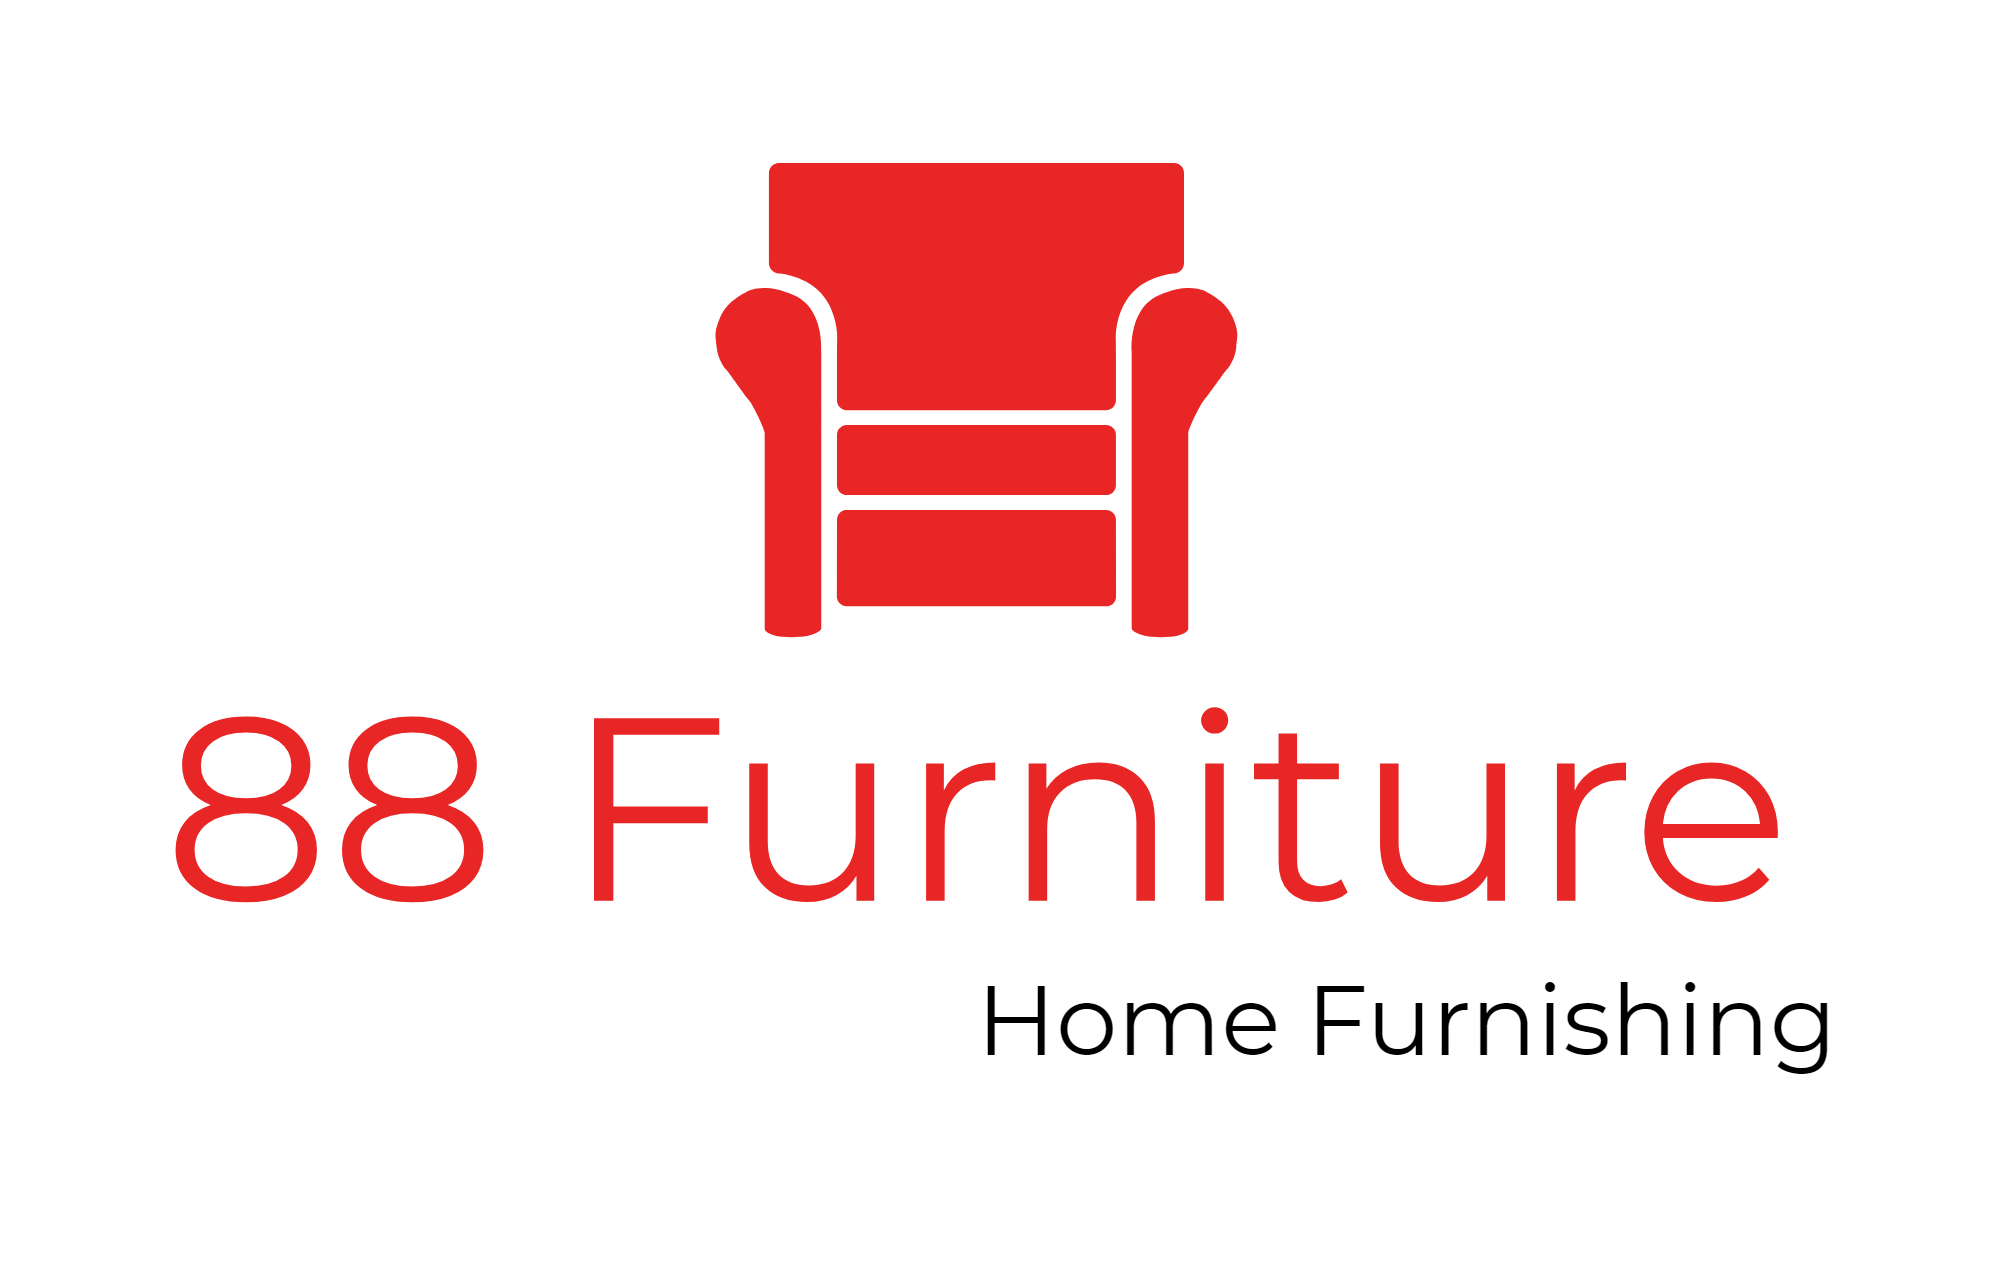 88 Furniture